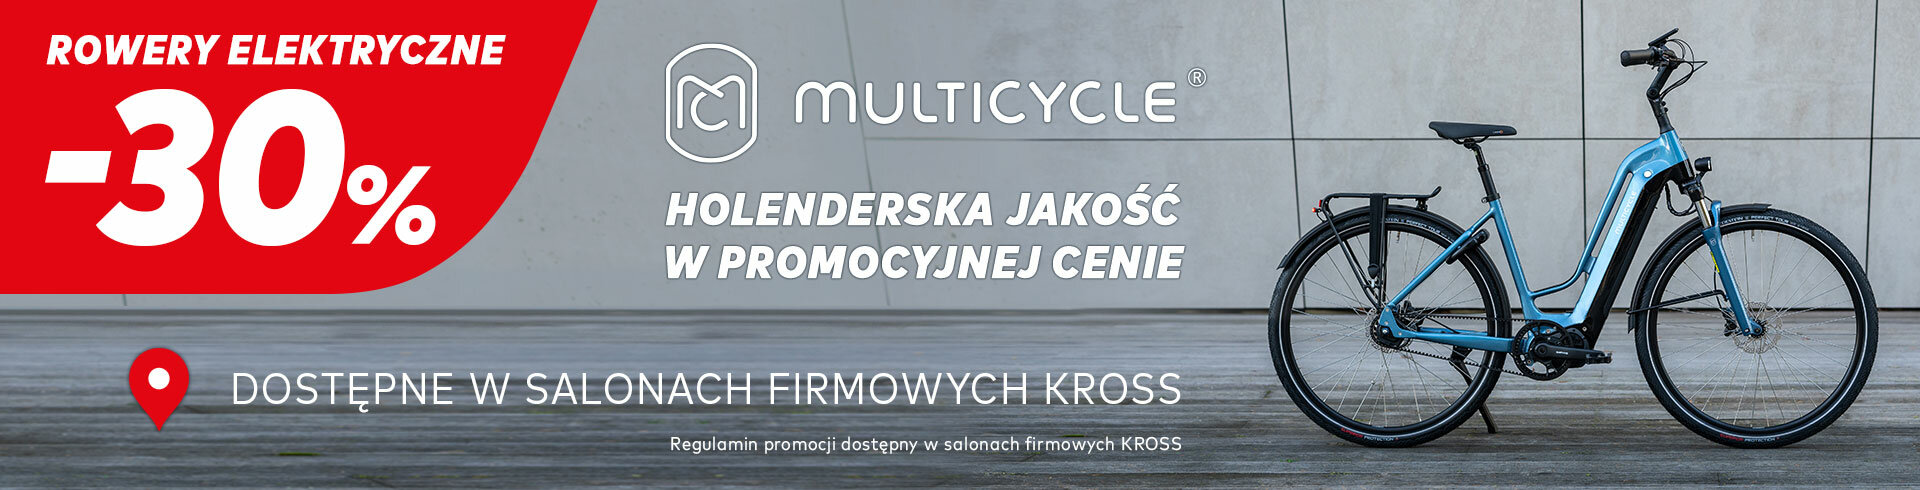 Skorzystaj z promocji na elektryczne rowery Multicycle>>